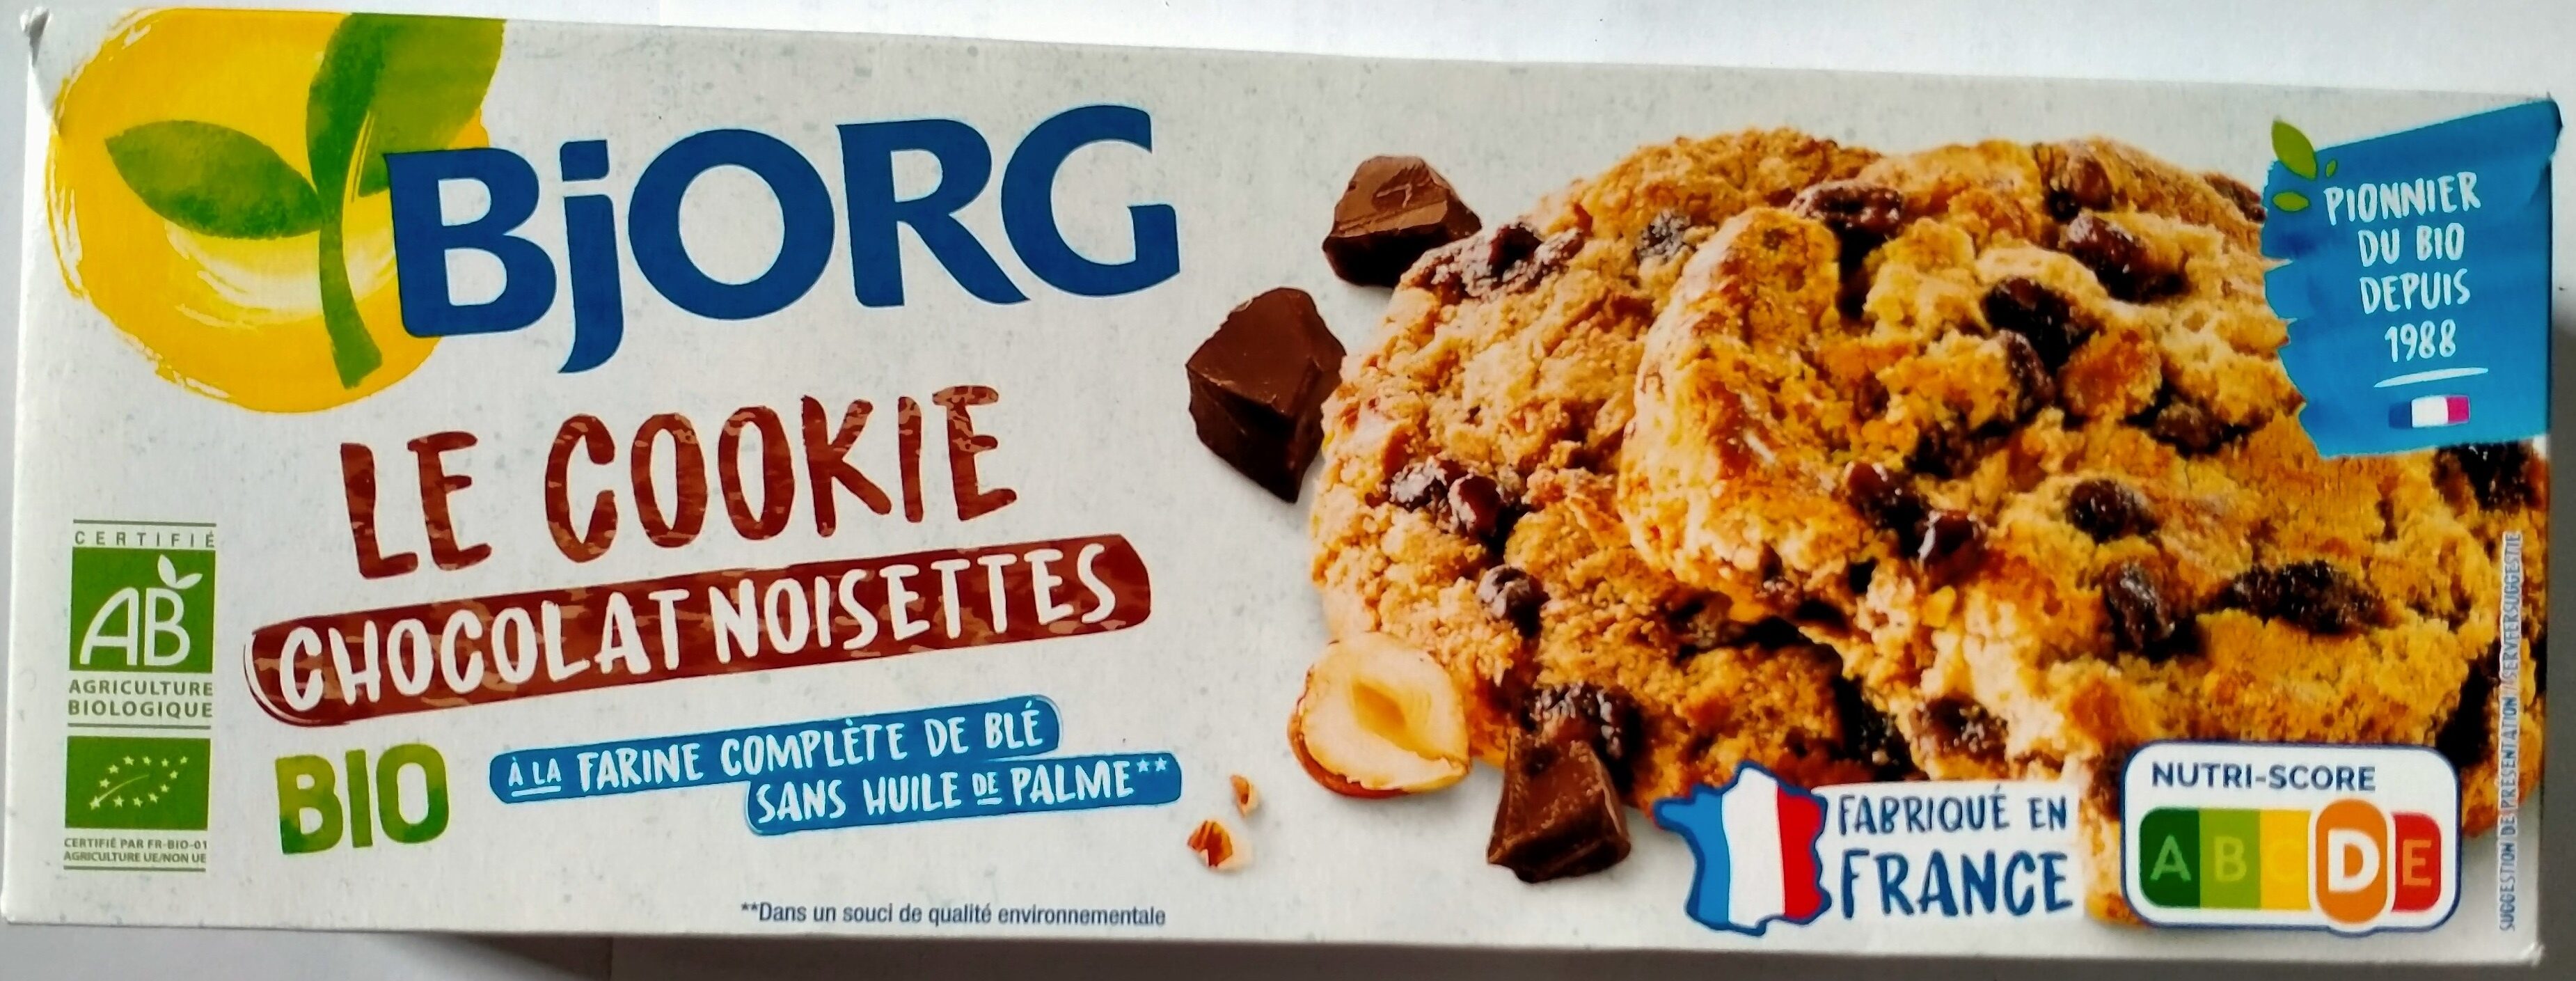 Le cookie Chocolat noisettes - Product